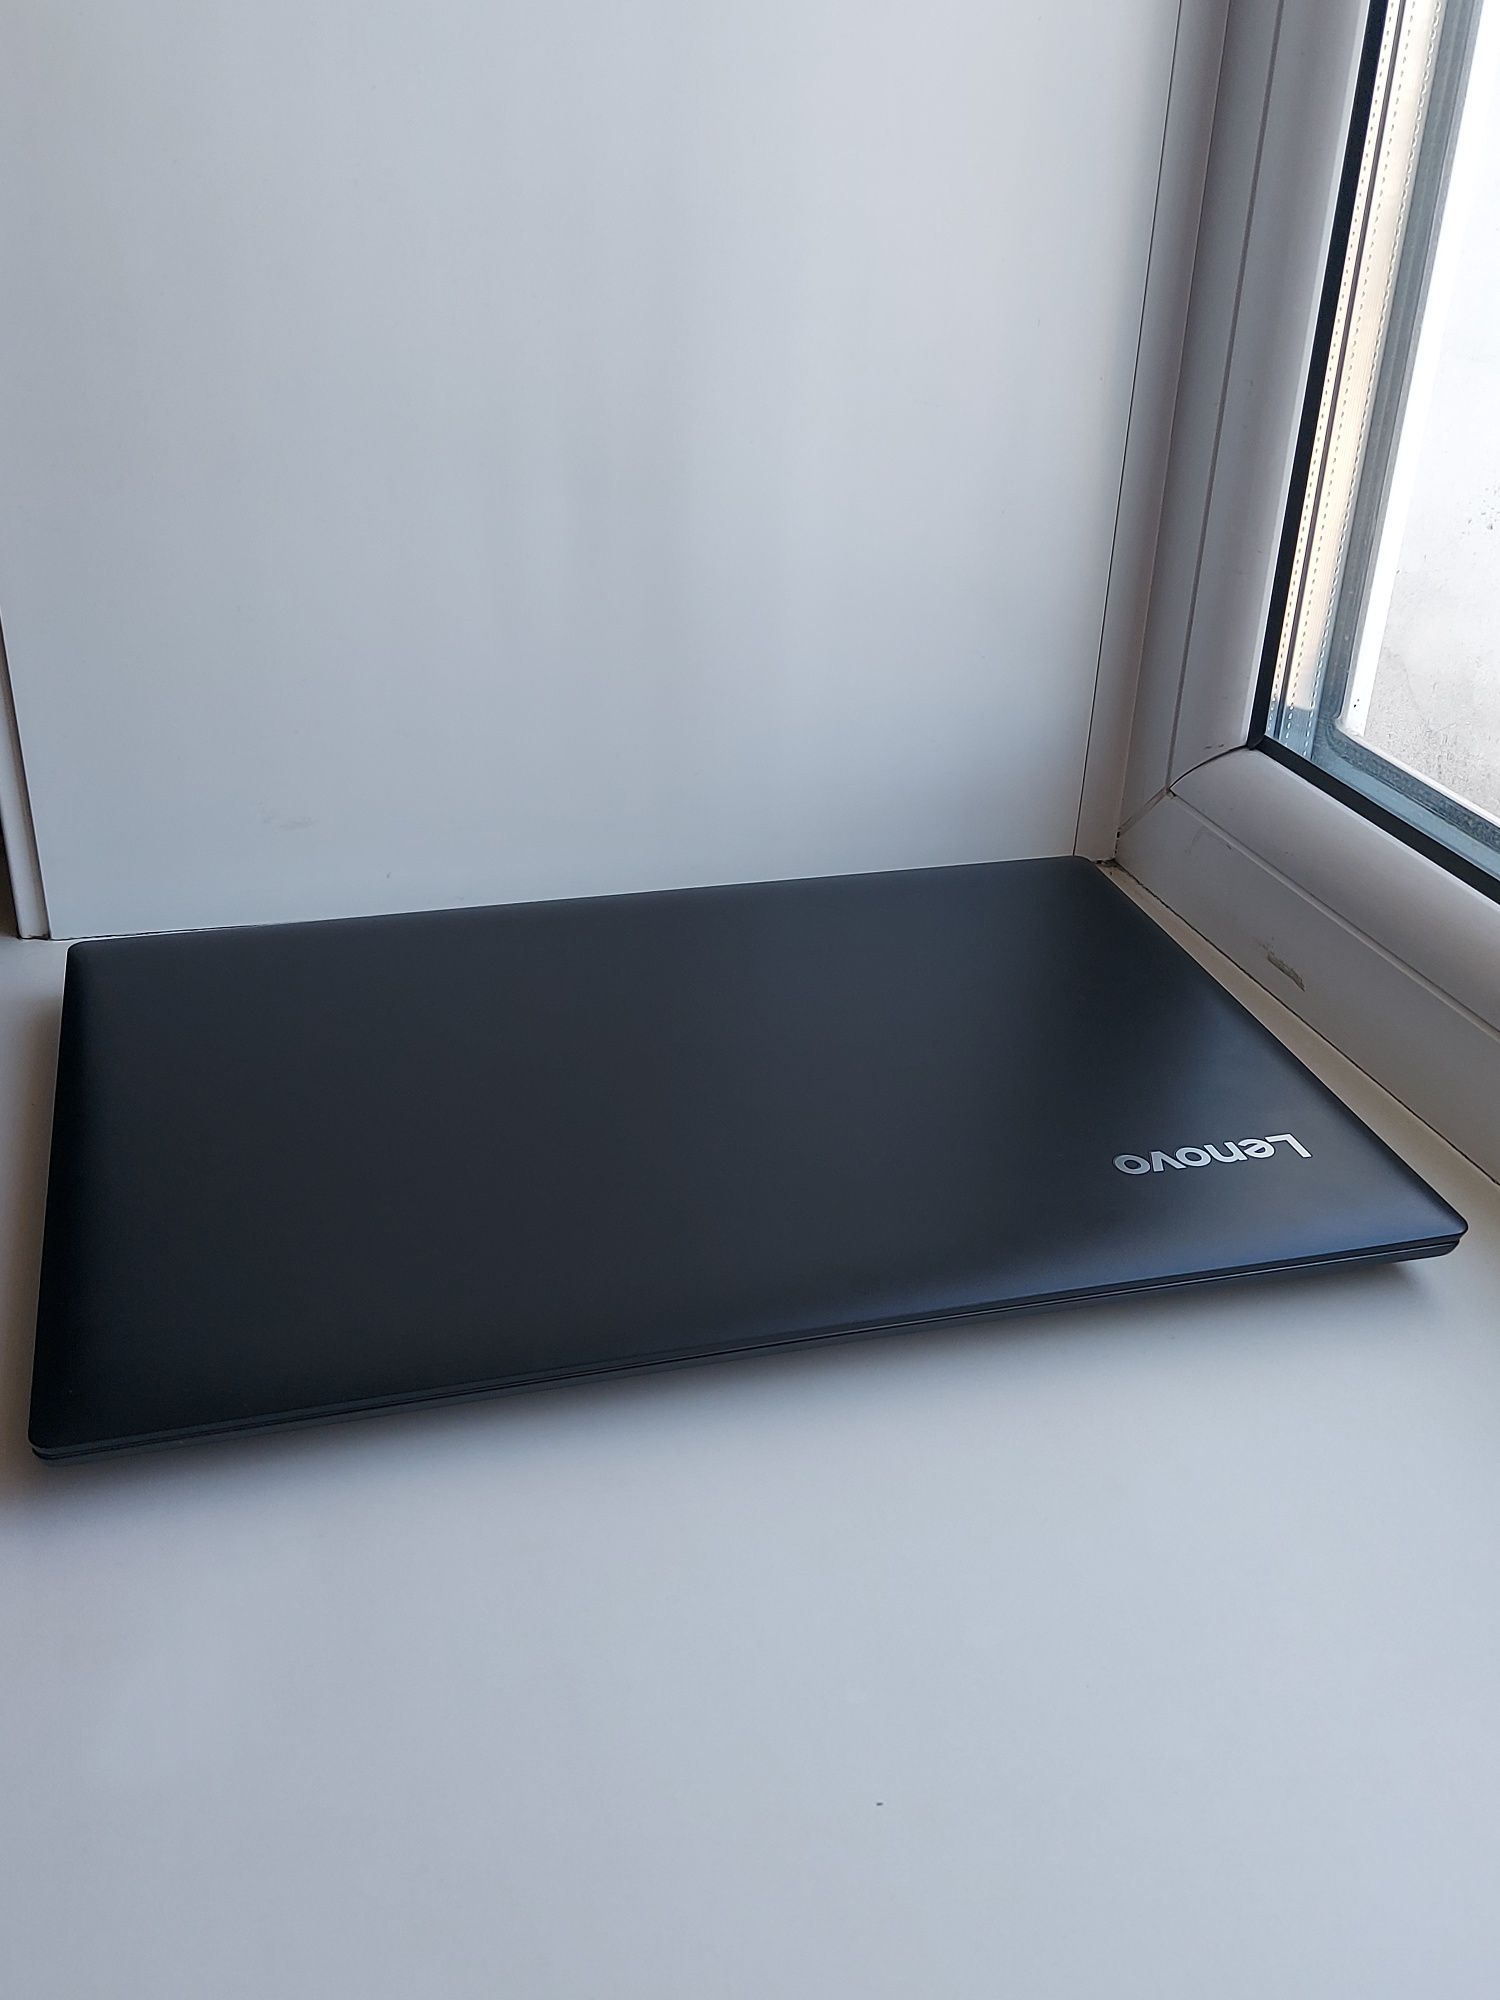 Срочно продам ноутбук Lenovo ideapad 330-15IKB